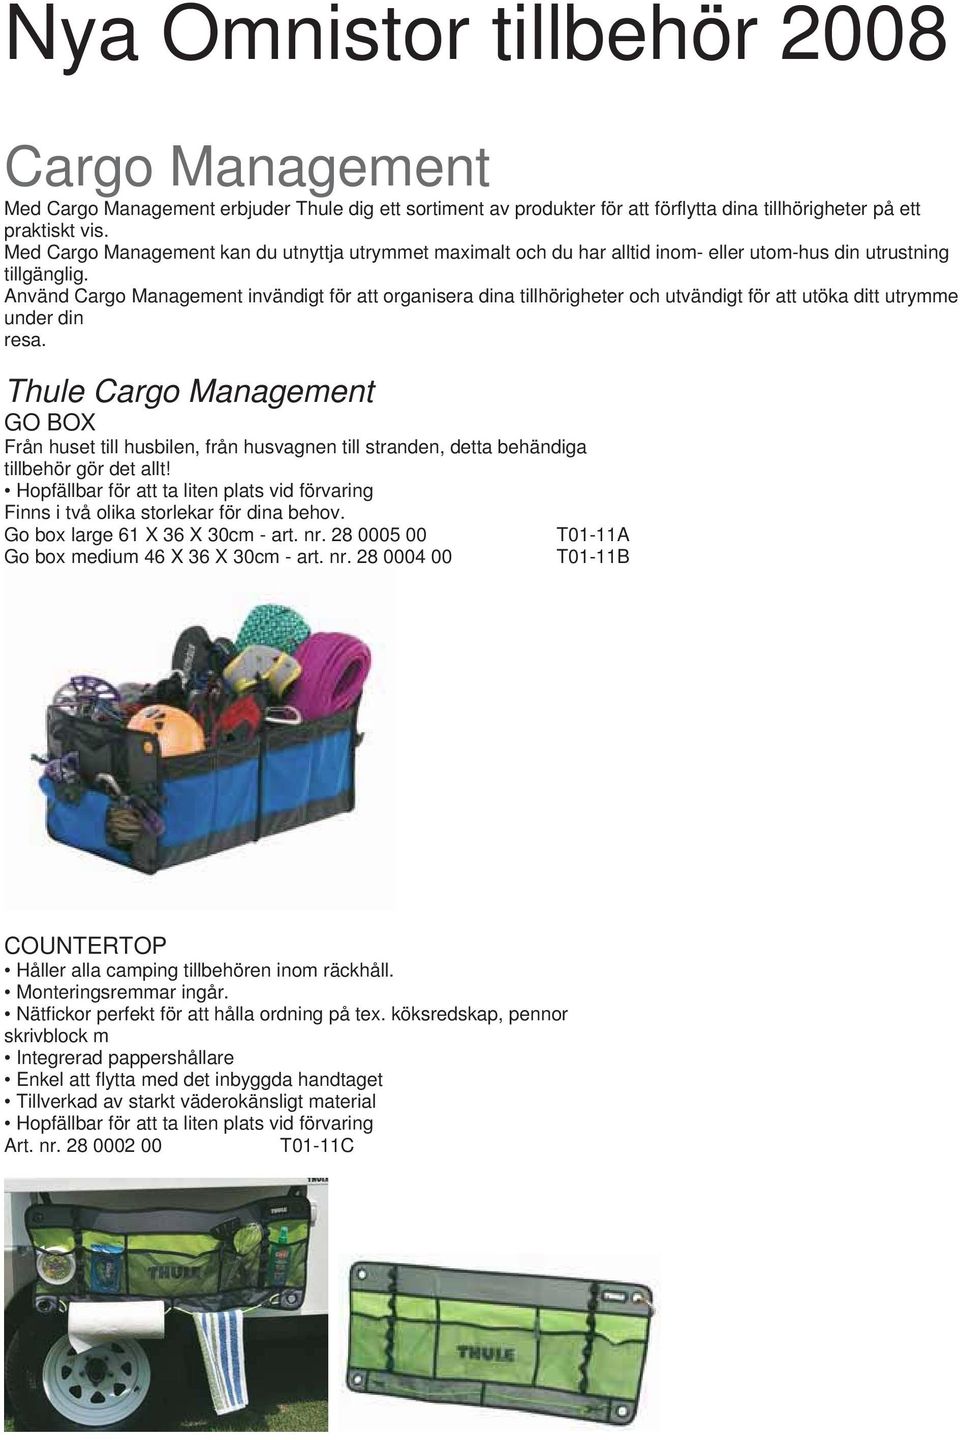 Använd Cargo Management invändigt för att organisera dina tillhörigheter och utvändigt för att utöka ditt utrymme under din resa.